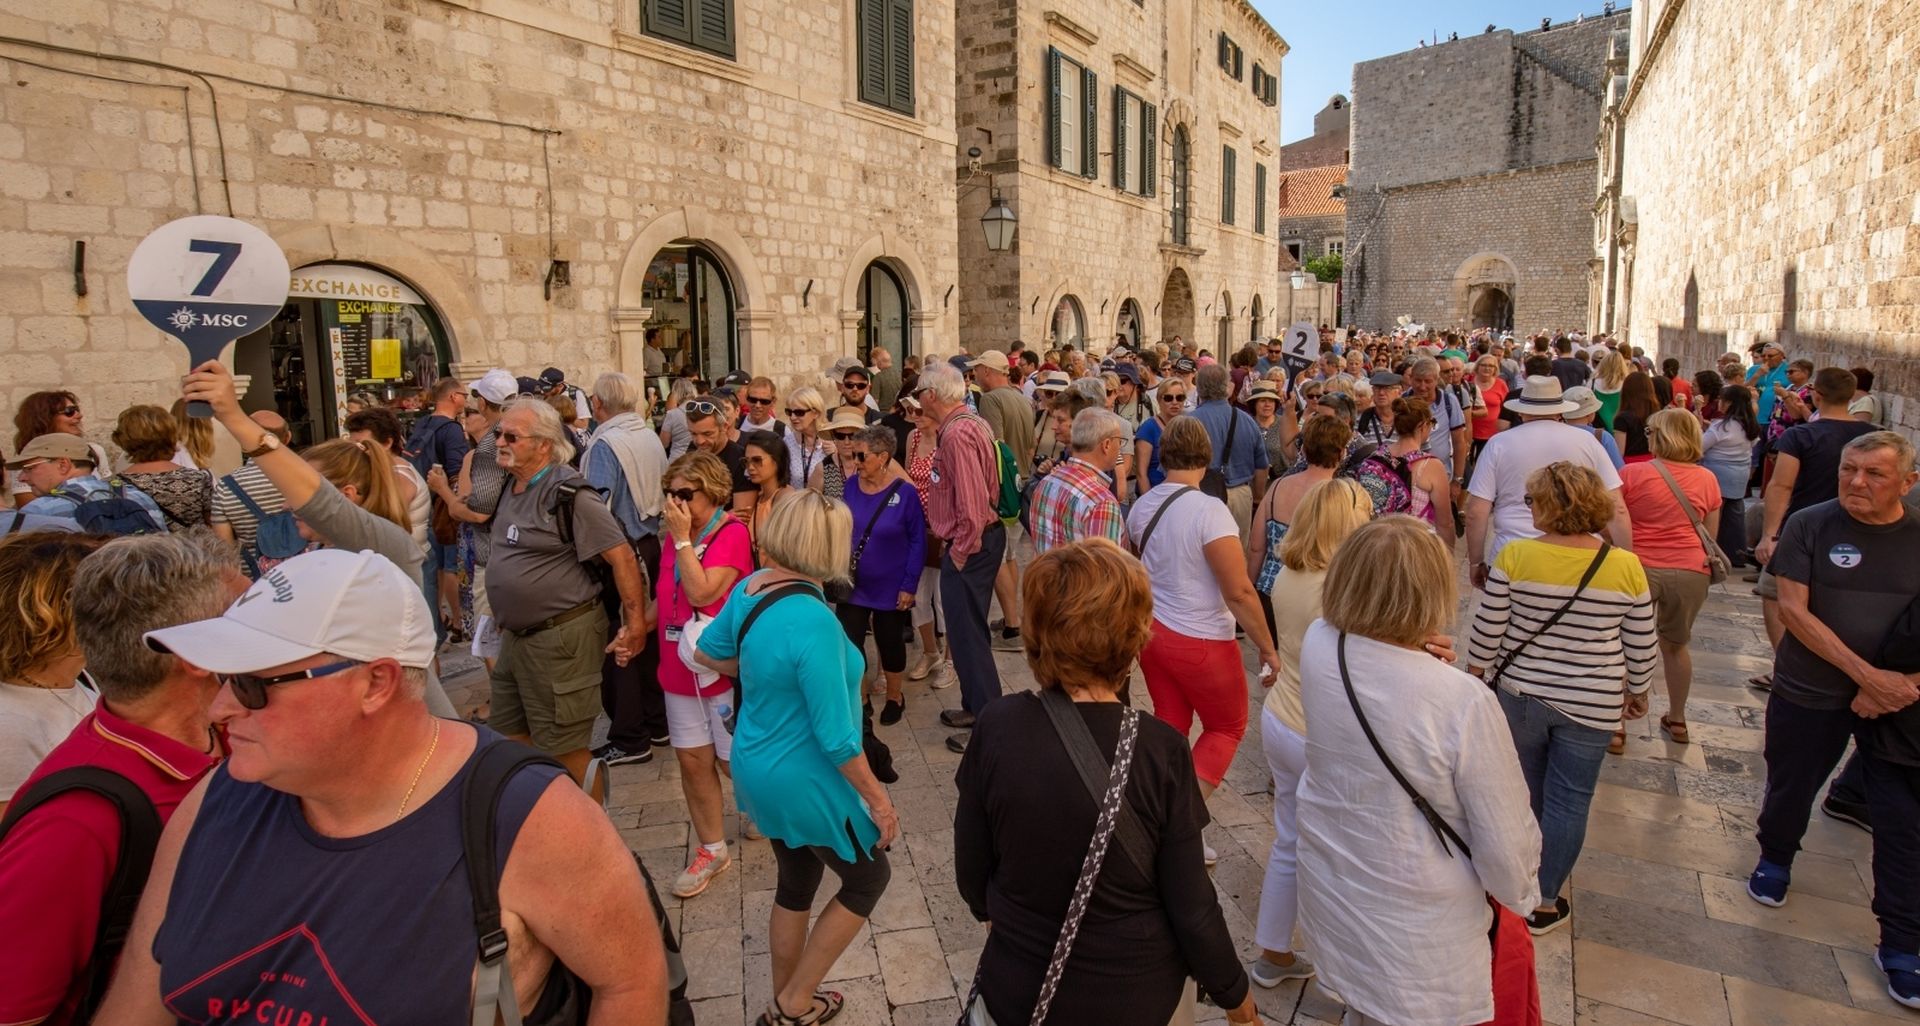 26.09.2019., Stara gradska jezgra, Dubrovnik -  Grupe turista u obilasku gradske jezgre.
Photo: Grgo Jelavic/PIXSELL